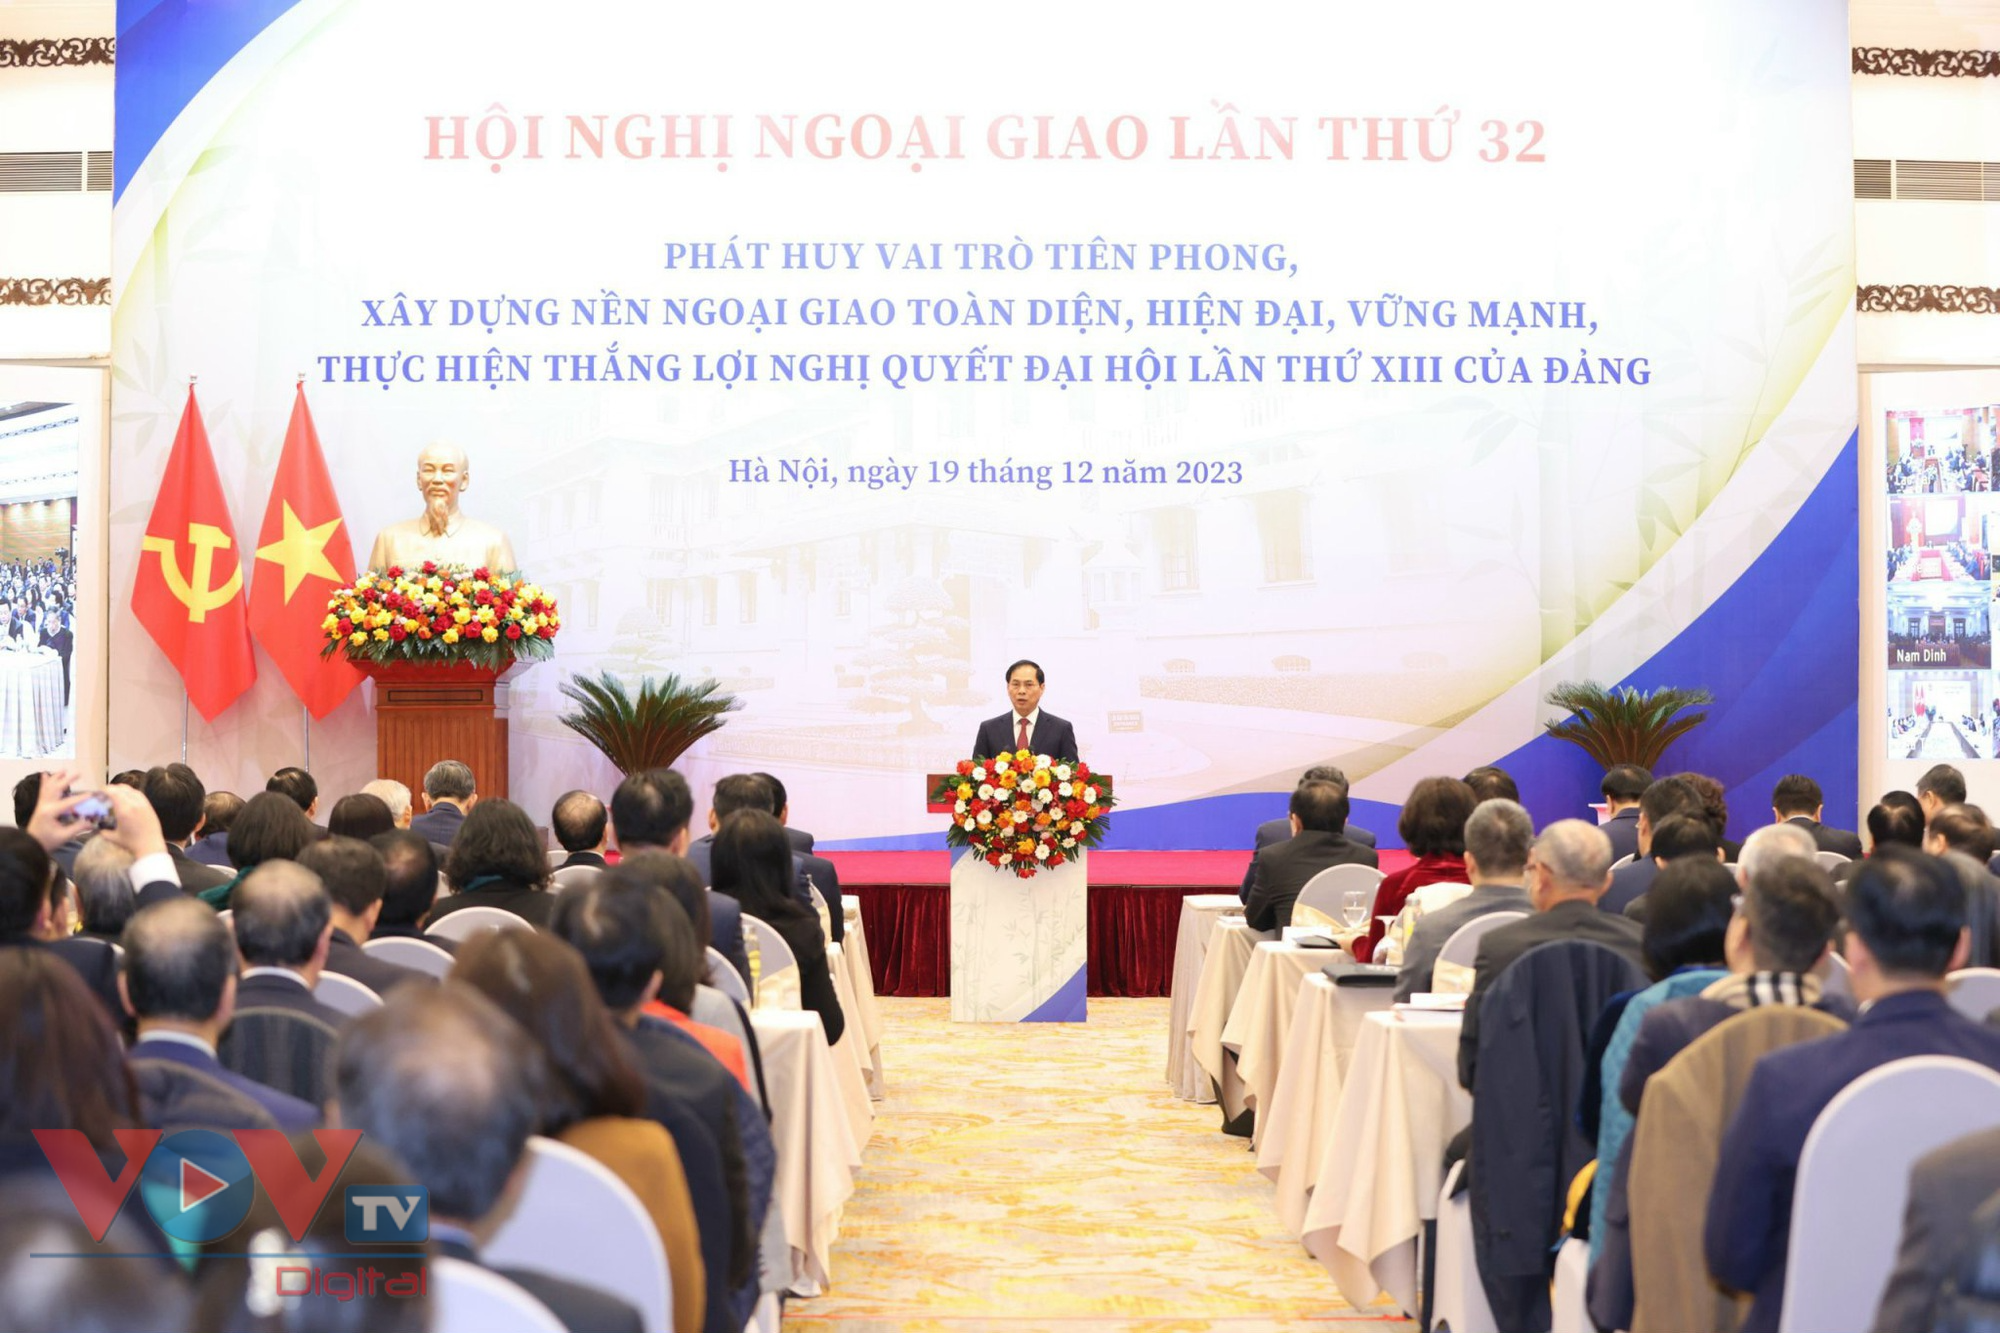 Tổng Bí thư Nguyễn Phú Trọng dự hội nghị Ngoại giao lần thứ 32- Ảnh 8.